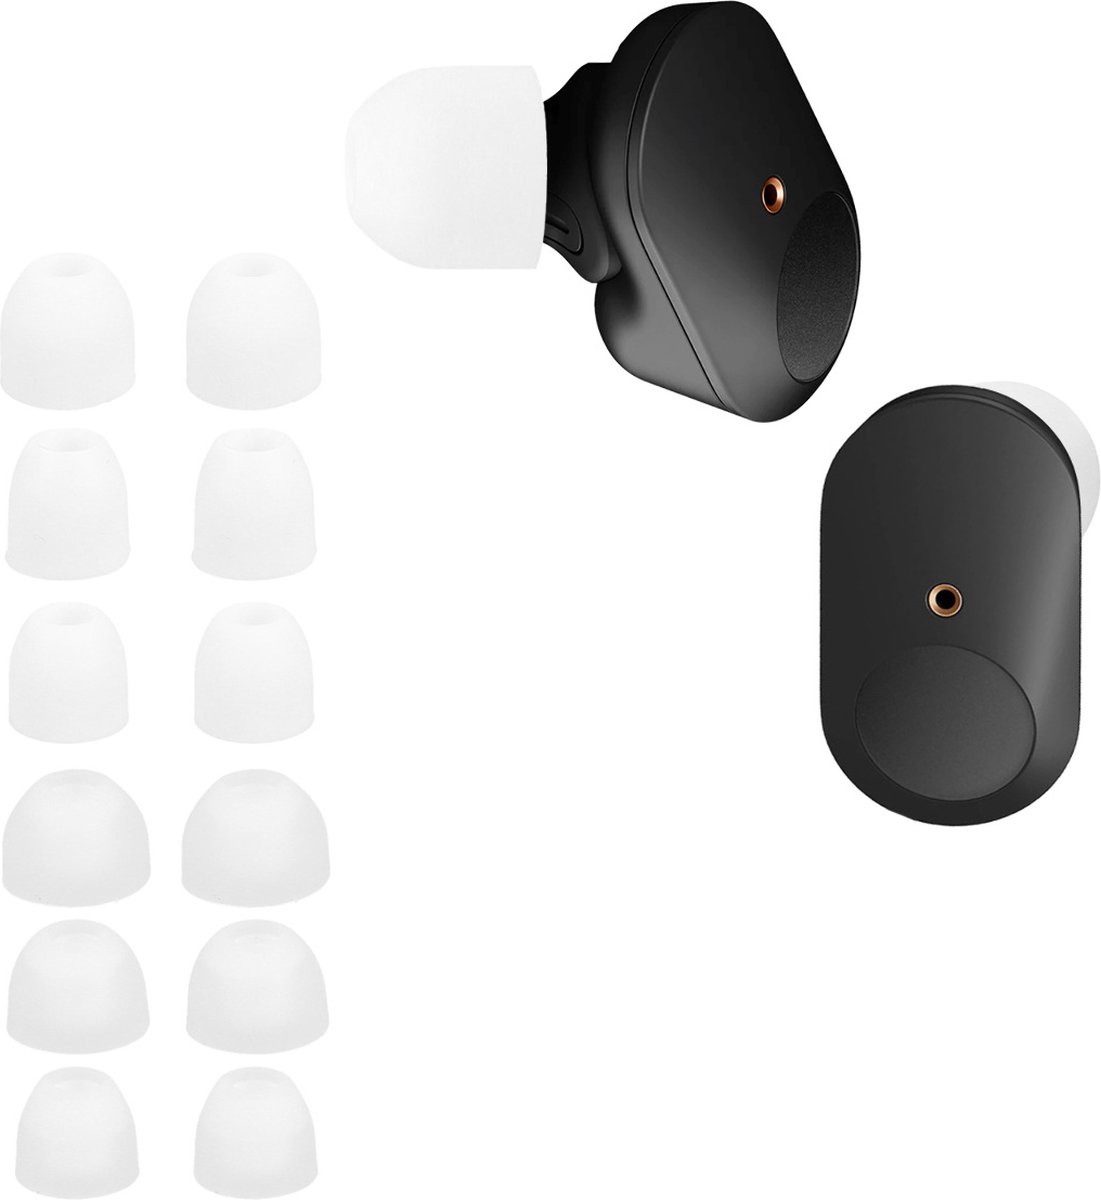 kwmobile 14x Reserve covers voor oordopjes geschikt voor Sony WF-1000XM3 / WF-1000XM4 / WF-1000XM5 - 4 maten - Silicone dopjes voor in-ear headphones